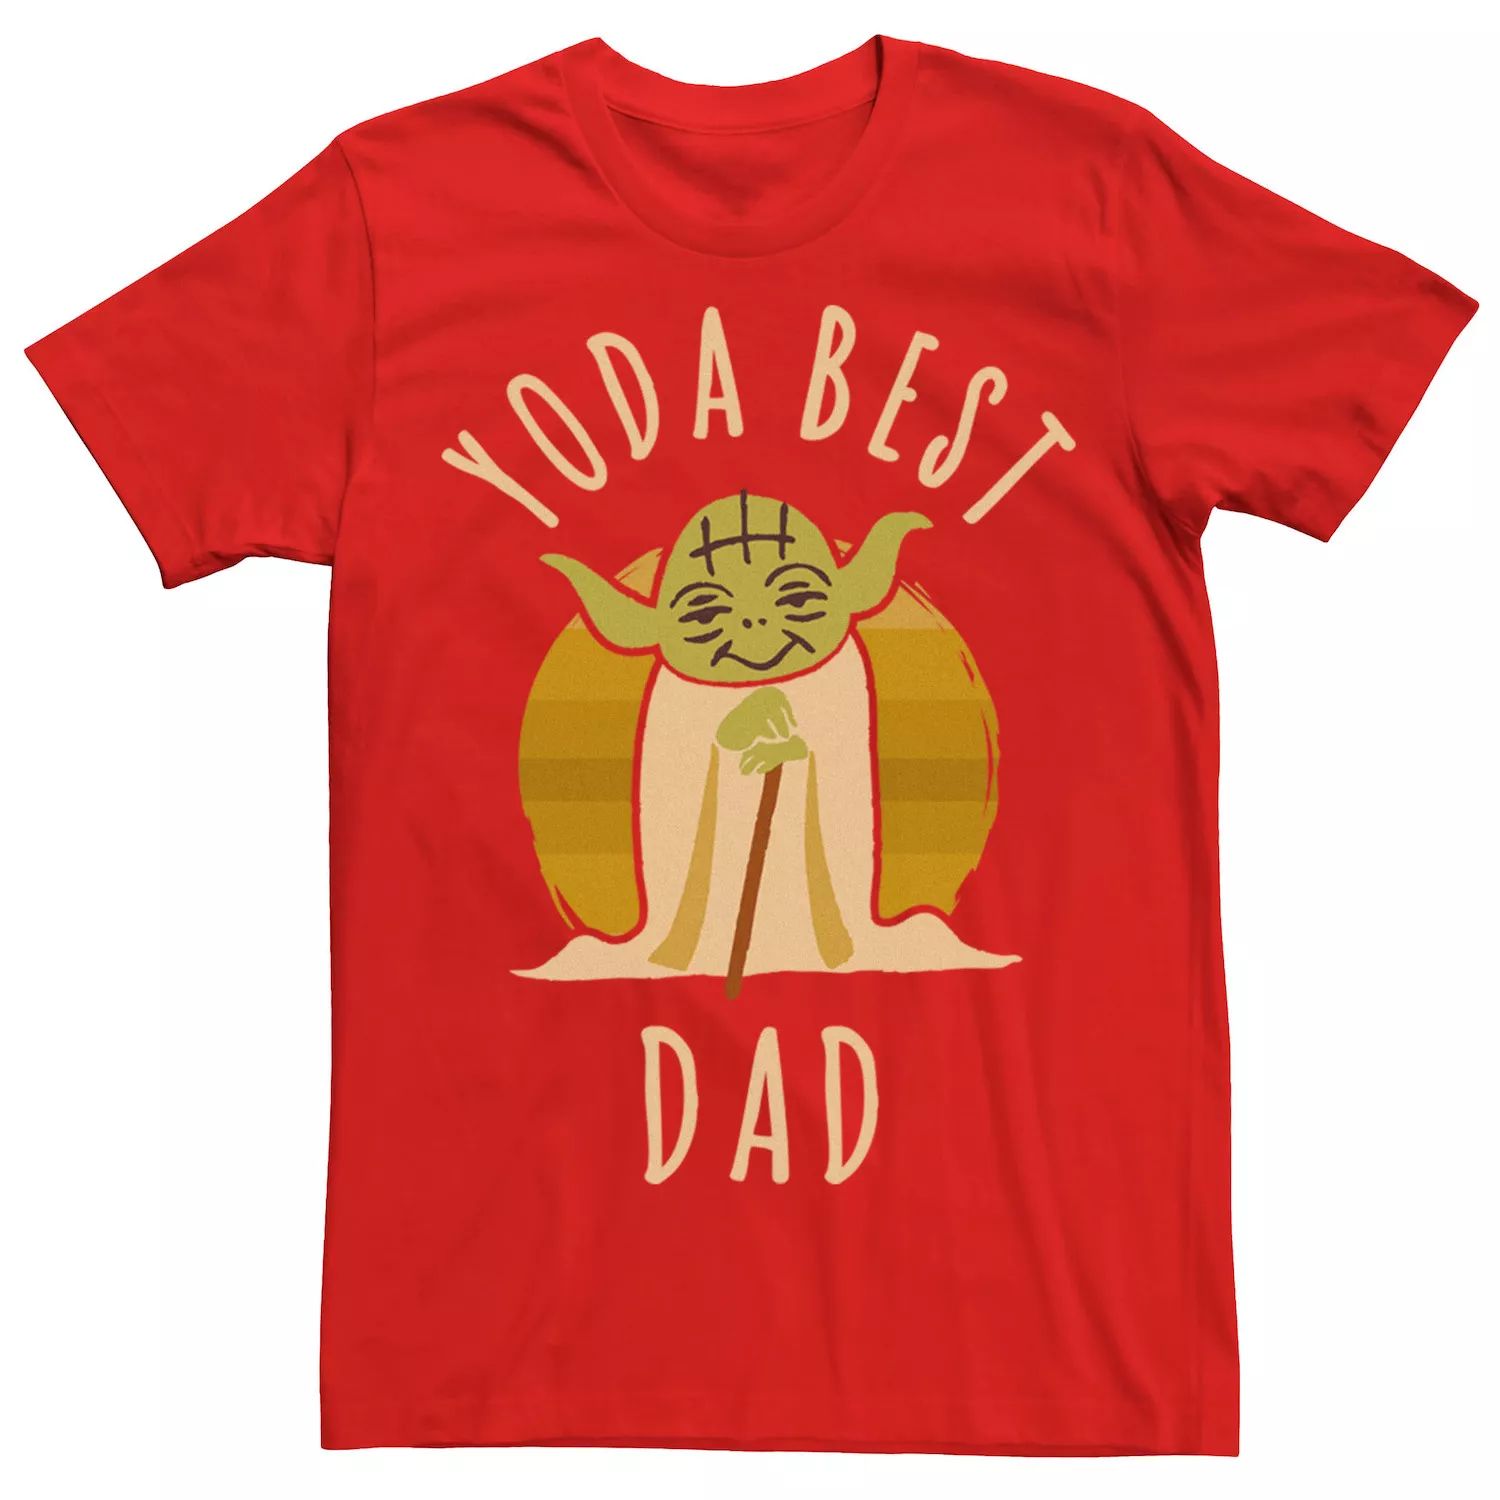 Мужская футболка Yoda Best Dad с героями мультфильма «Звездные войны» Йода Star Wars, красный